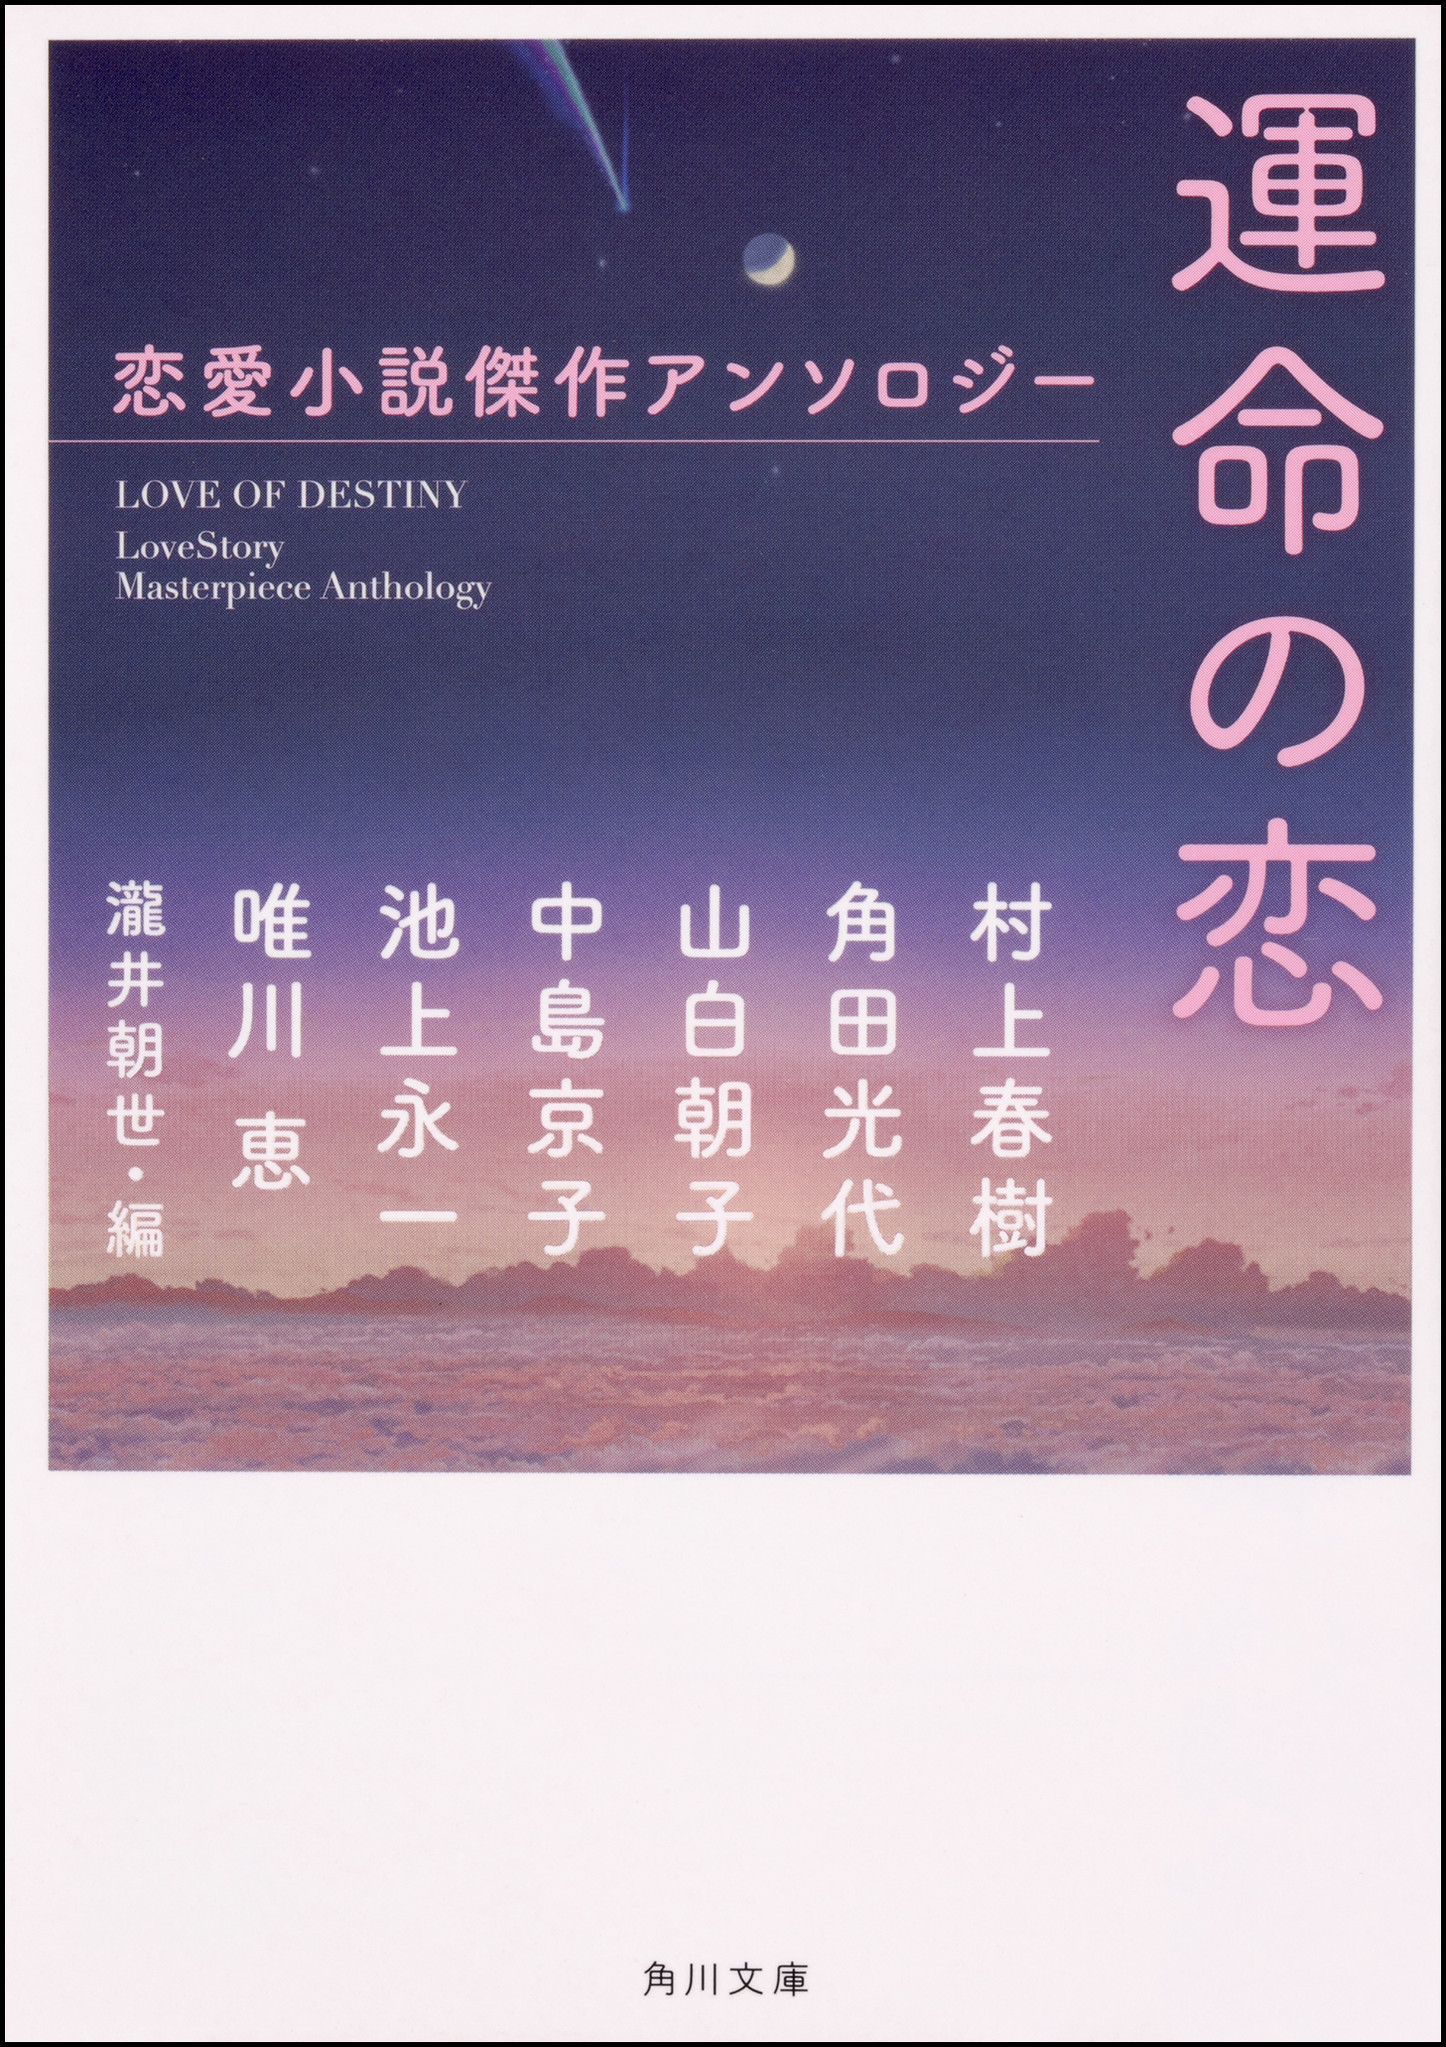 村上春樹 角田光代らによる恋愛小説短編集 運命の恋 発売 株式会社kadokawaのプレスリリース